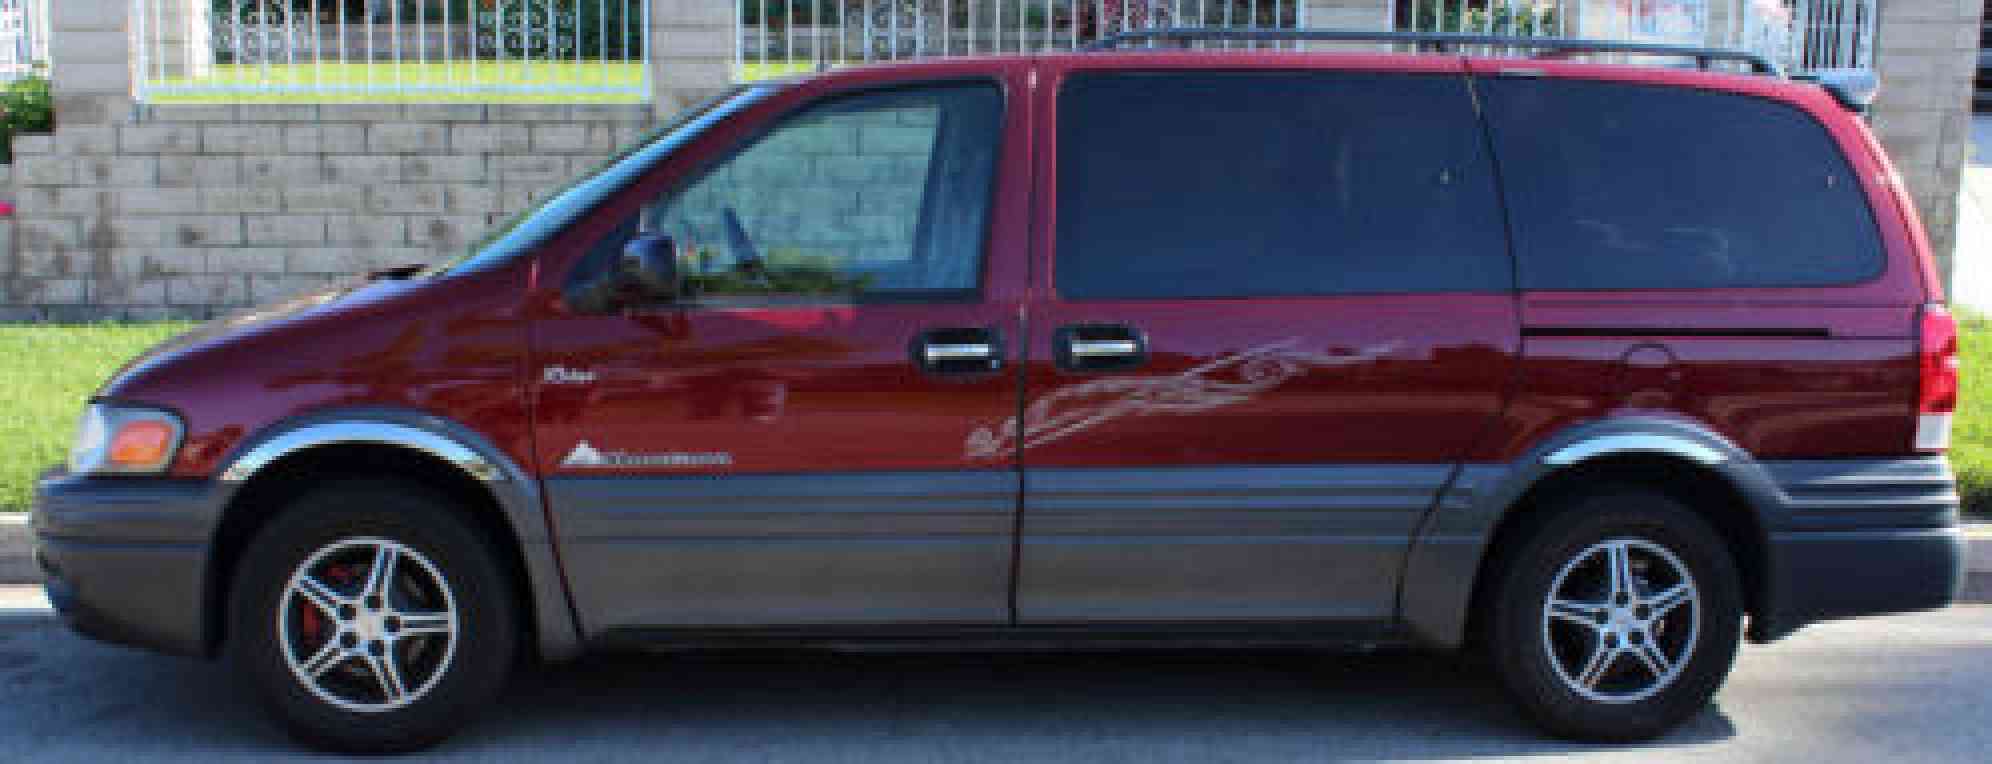 20020000 Pontiac Montana